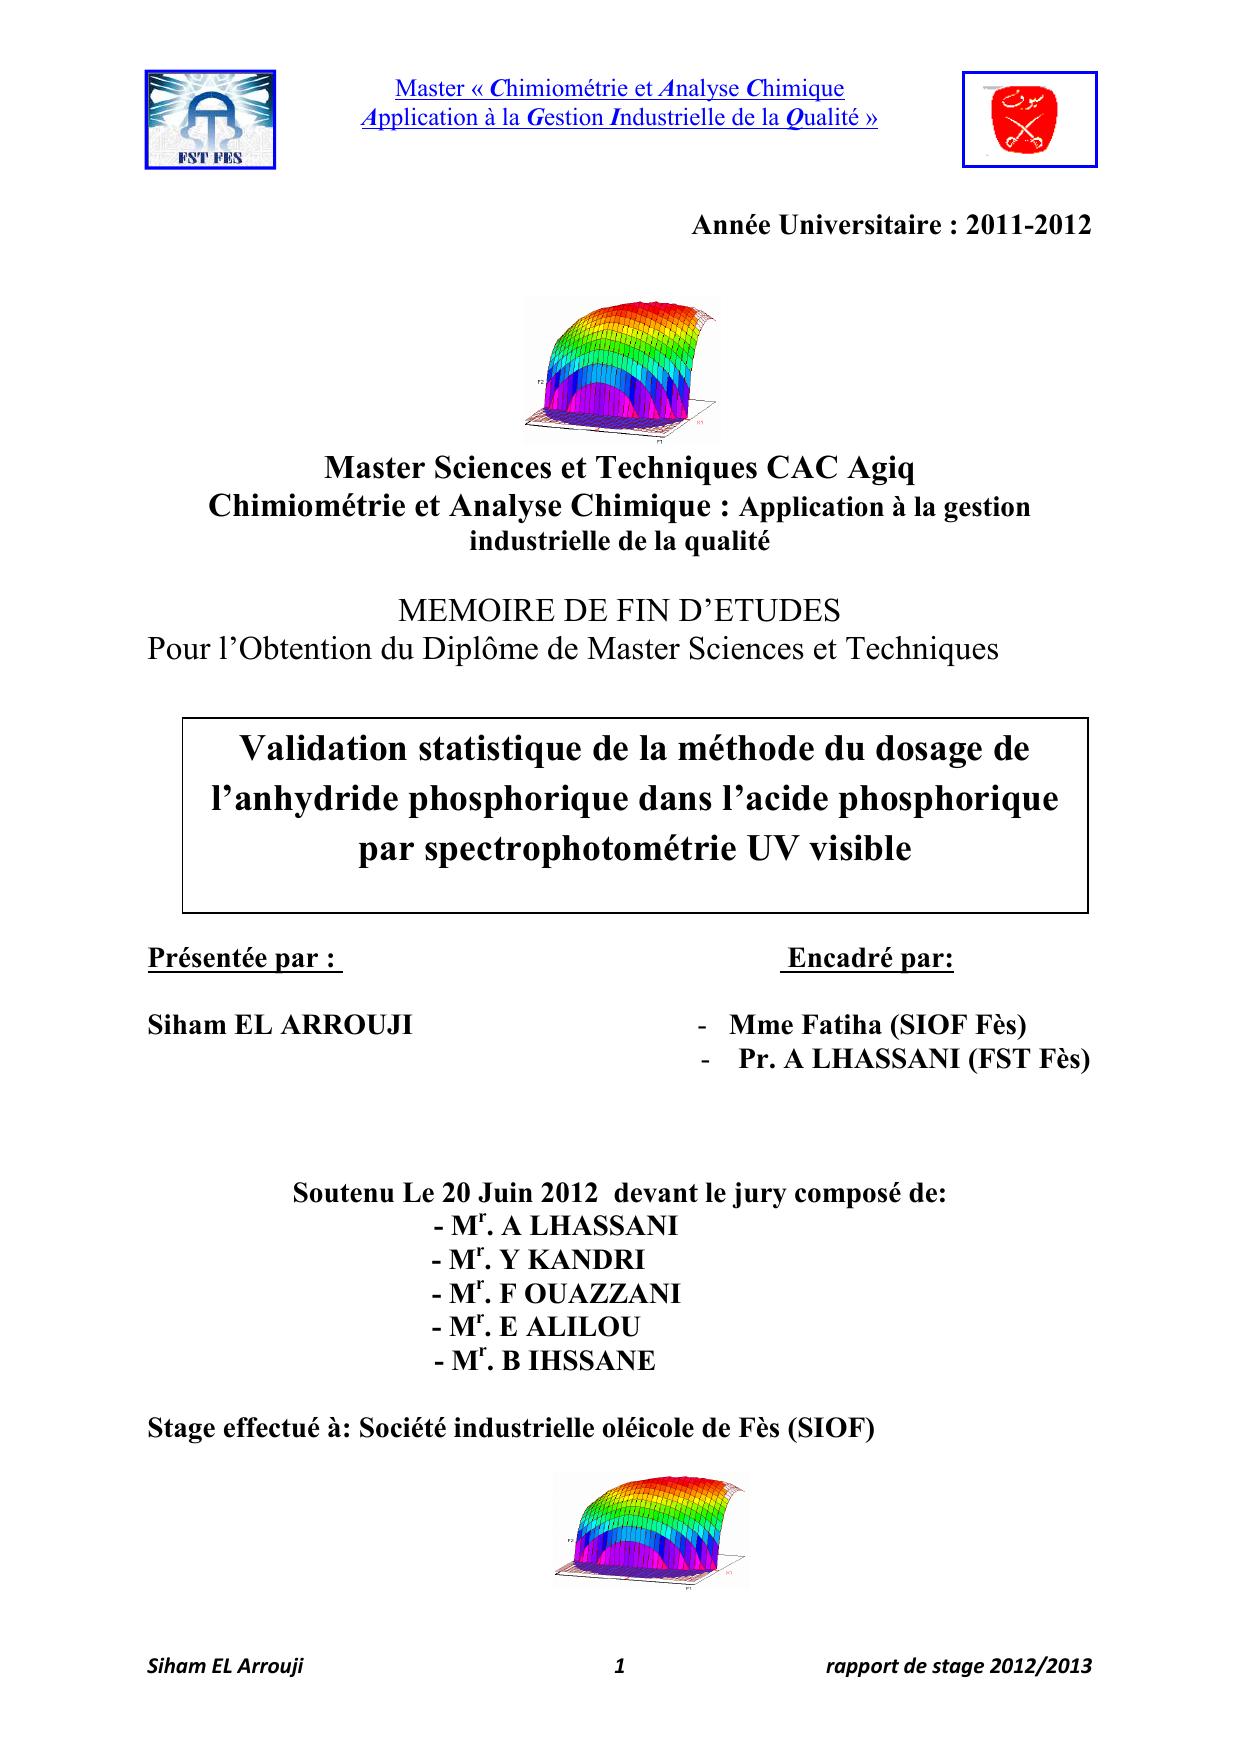 Validation statistique de la méthode du dosage de l’anhydride phosphorique dans l’acide phosphorique par spectrophotométrie UV visible